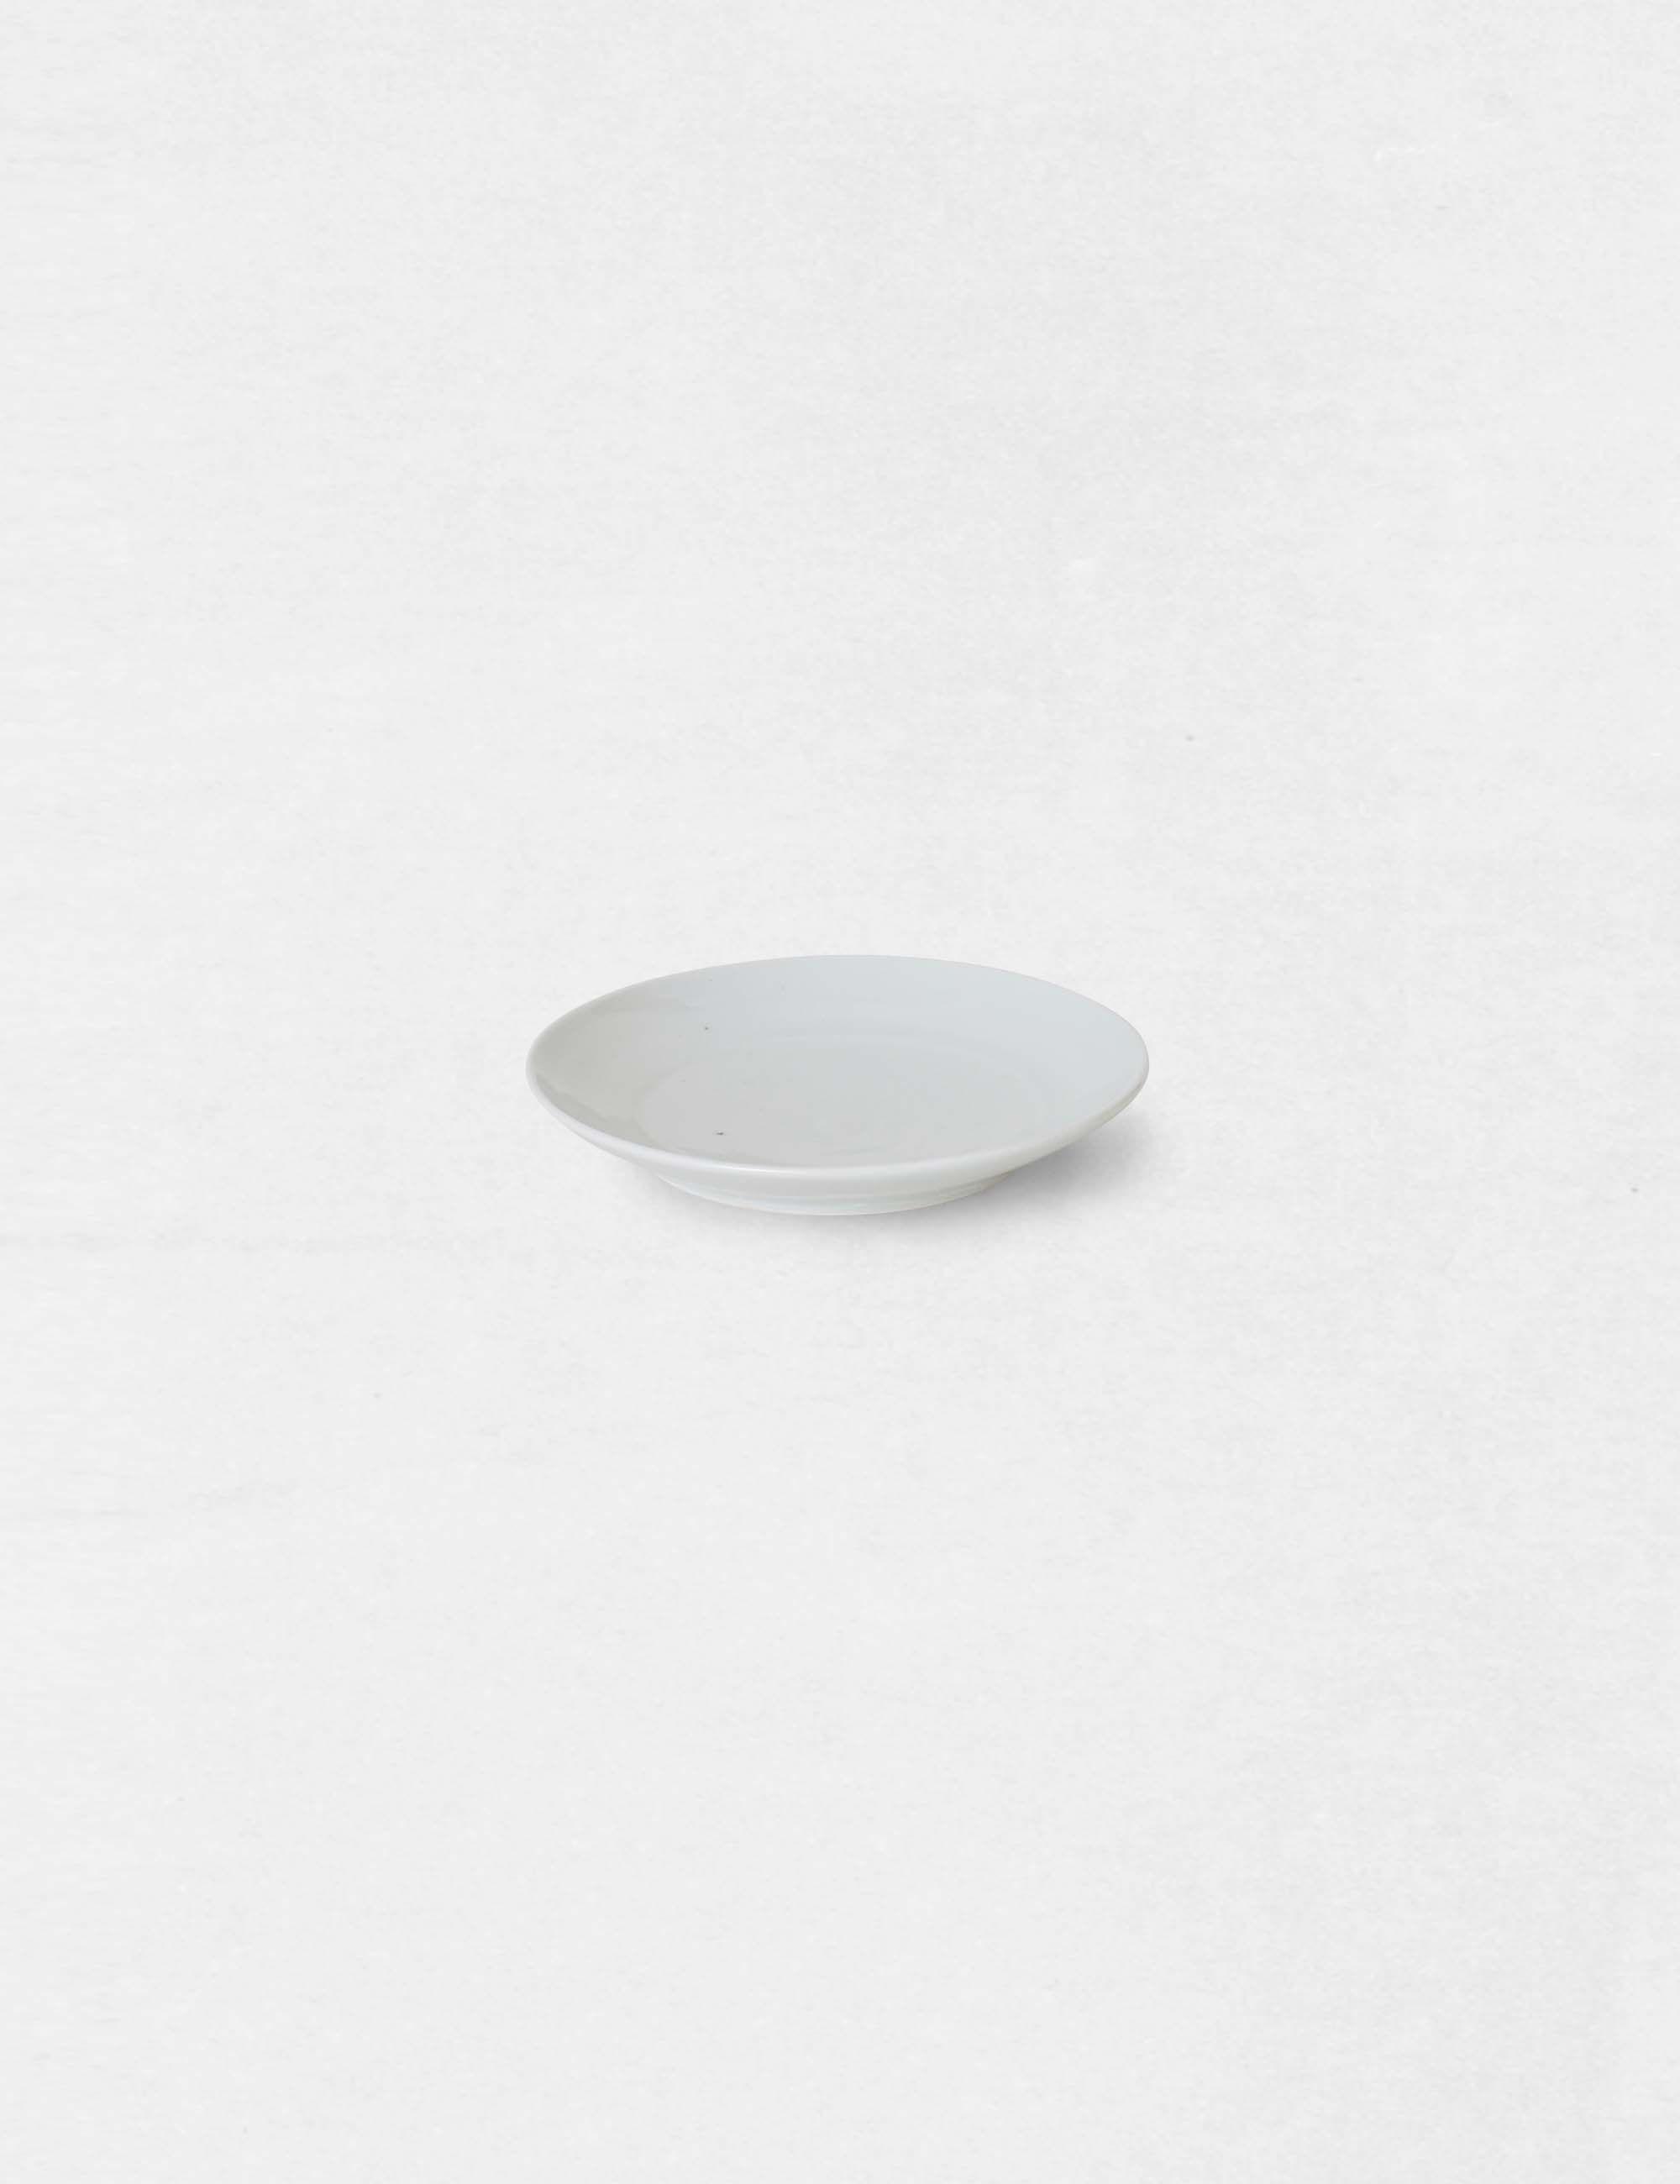 白磁 瑠璃磁の小皿 / ババグーリ